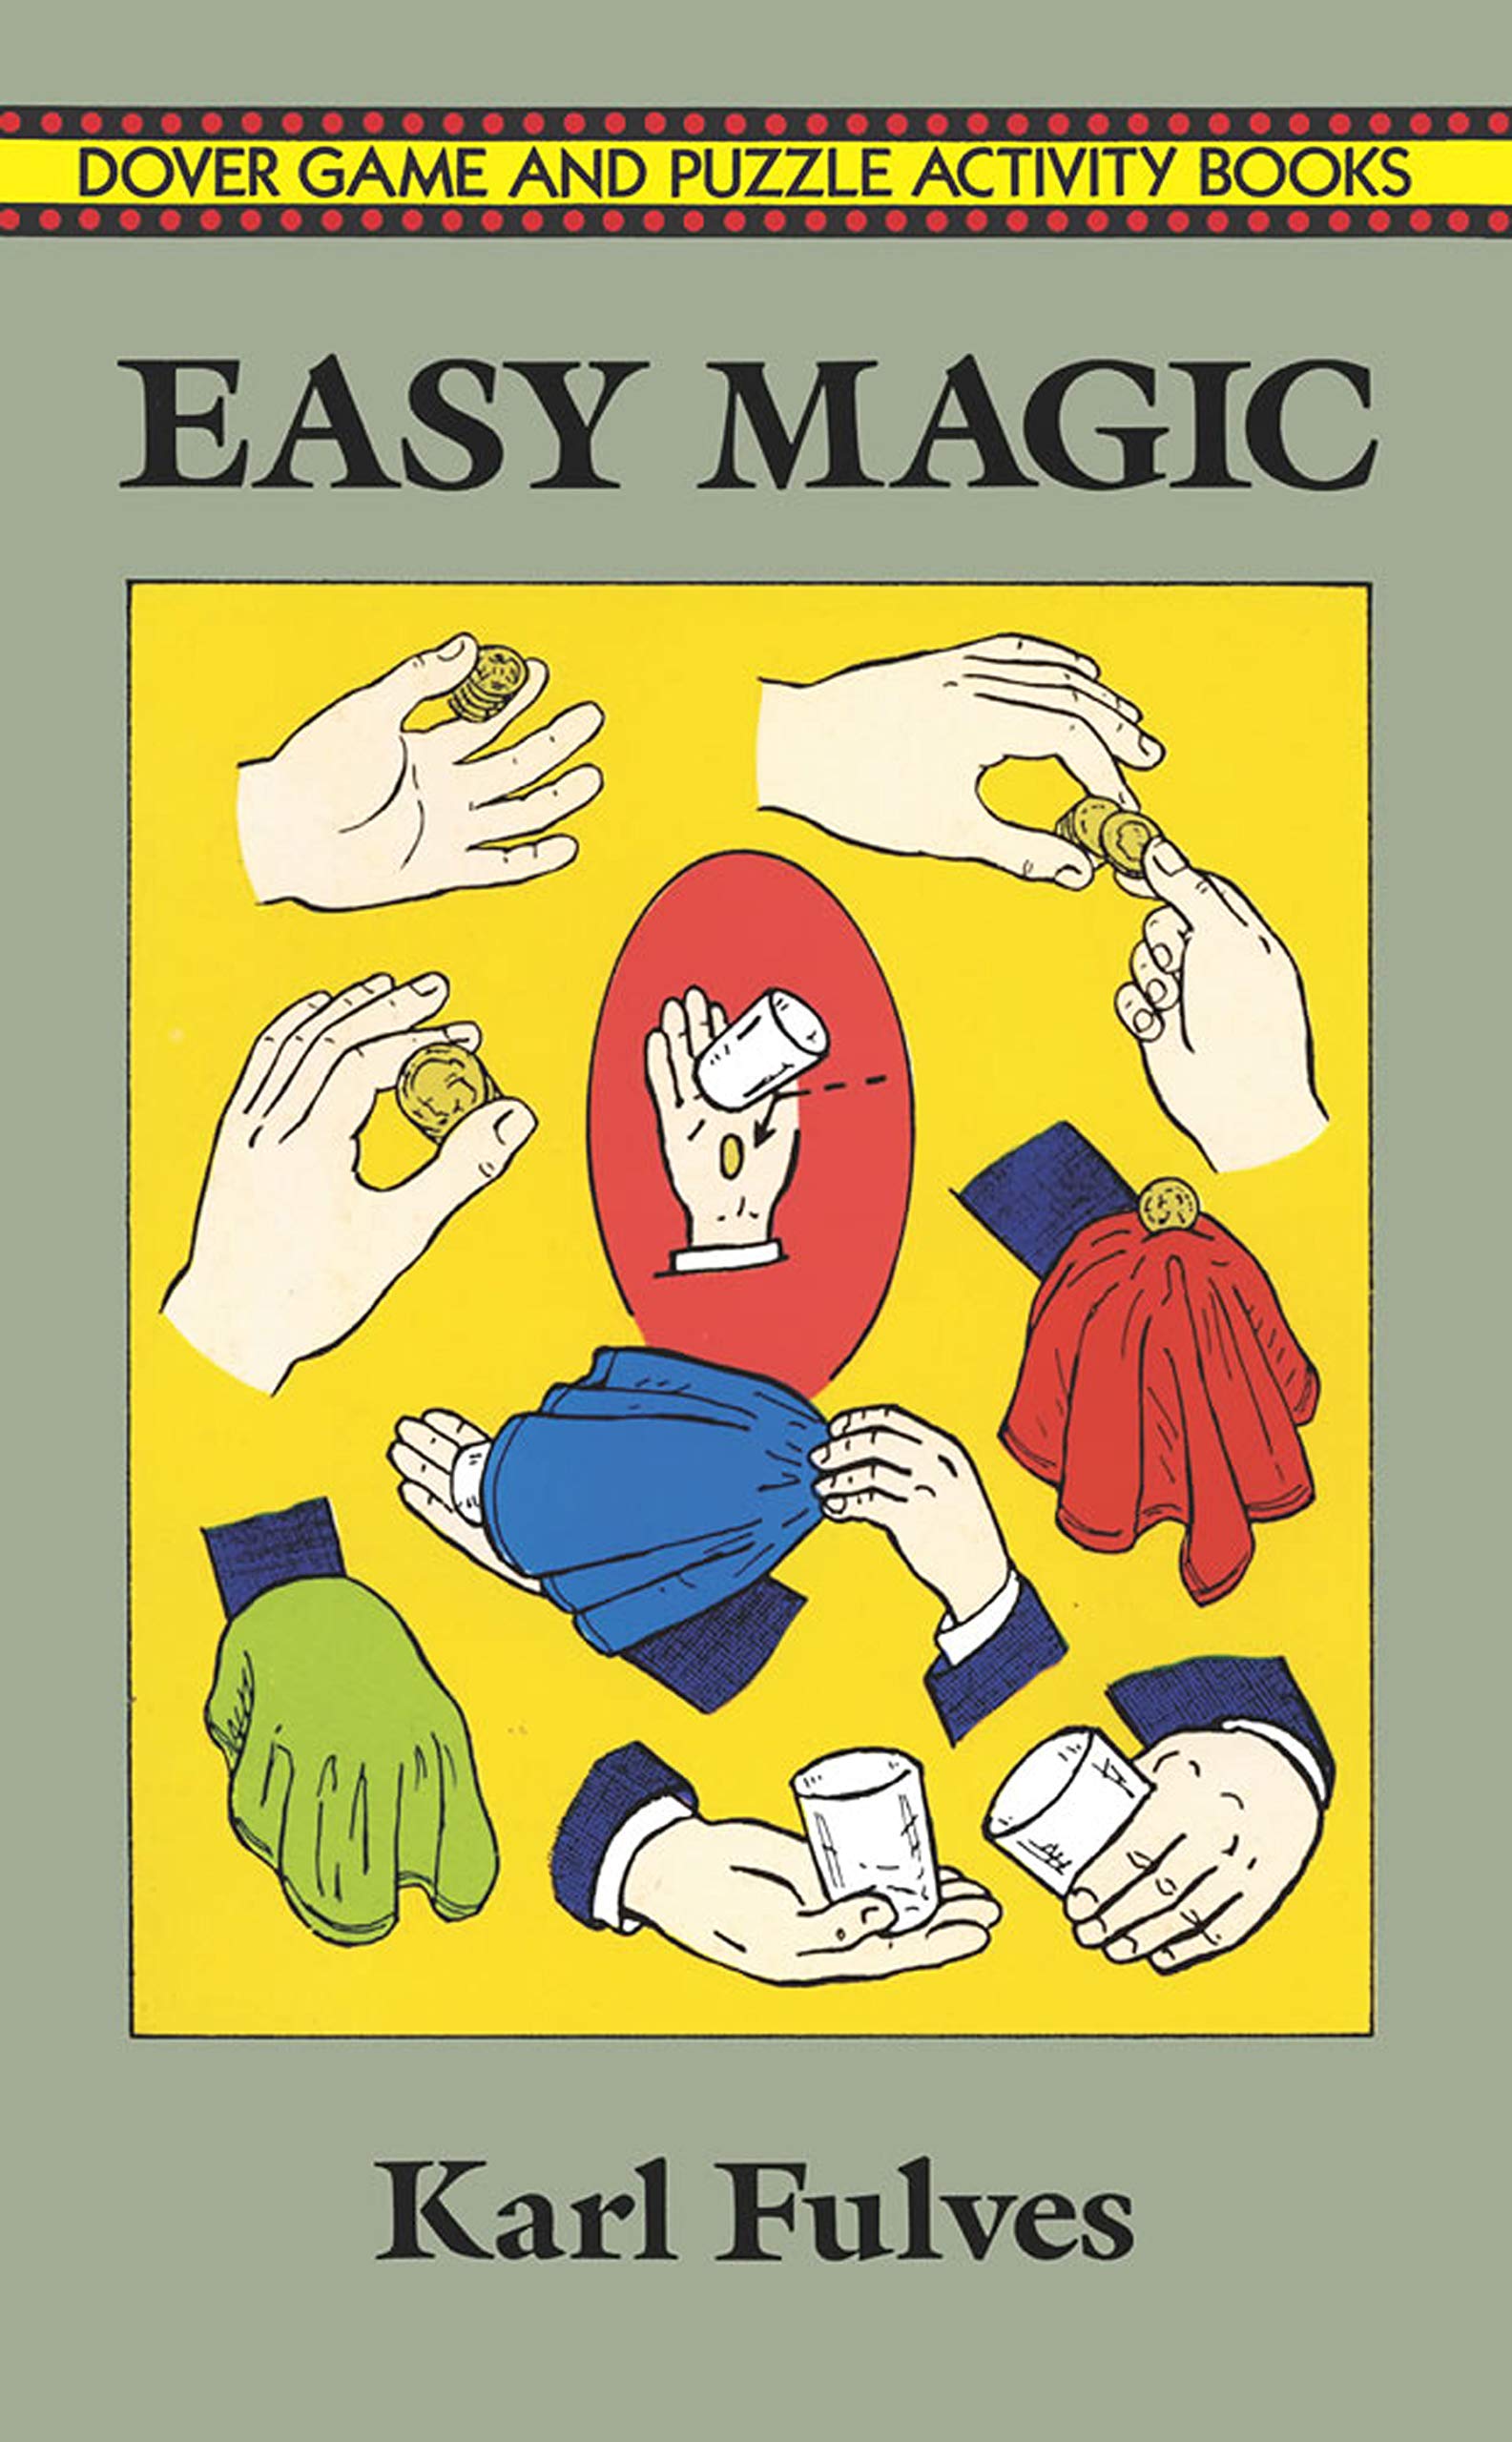 Tours de magie pour les adultes* – Todsky's Magic Shop